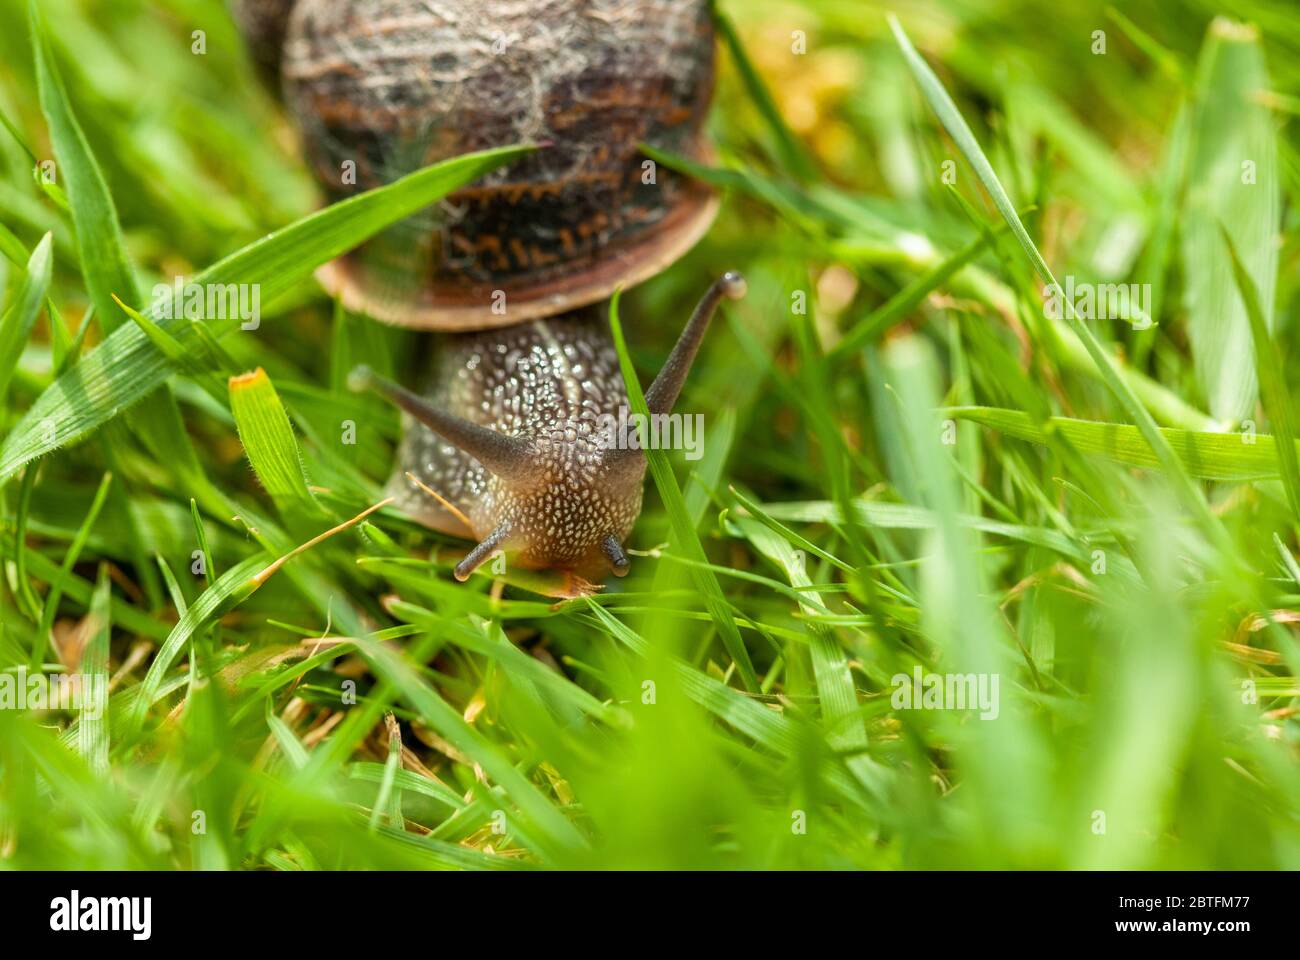 Garden snail moving through grass Stock Photo